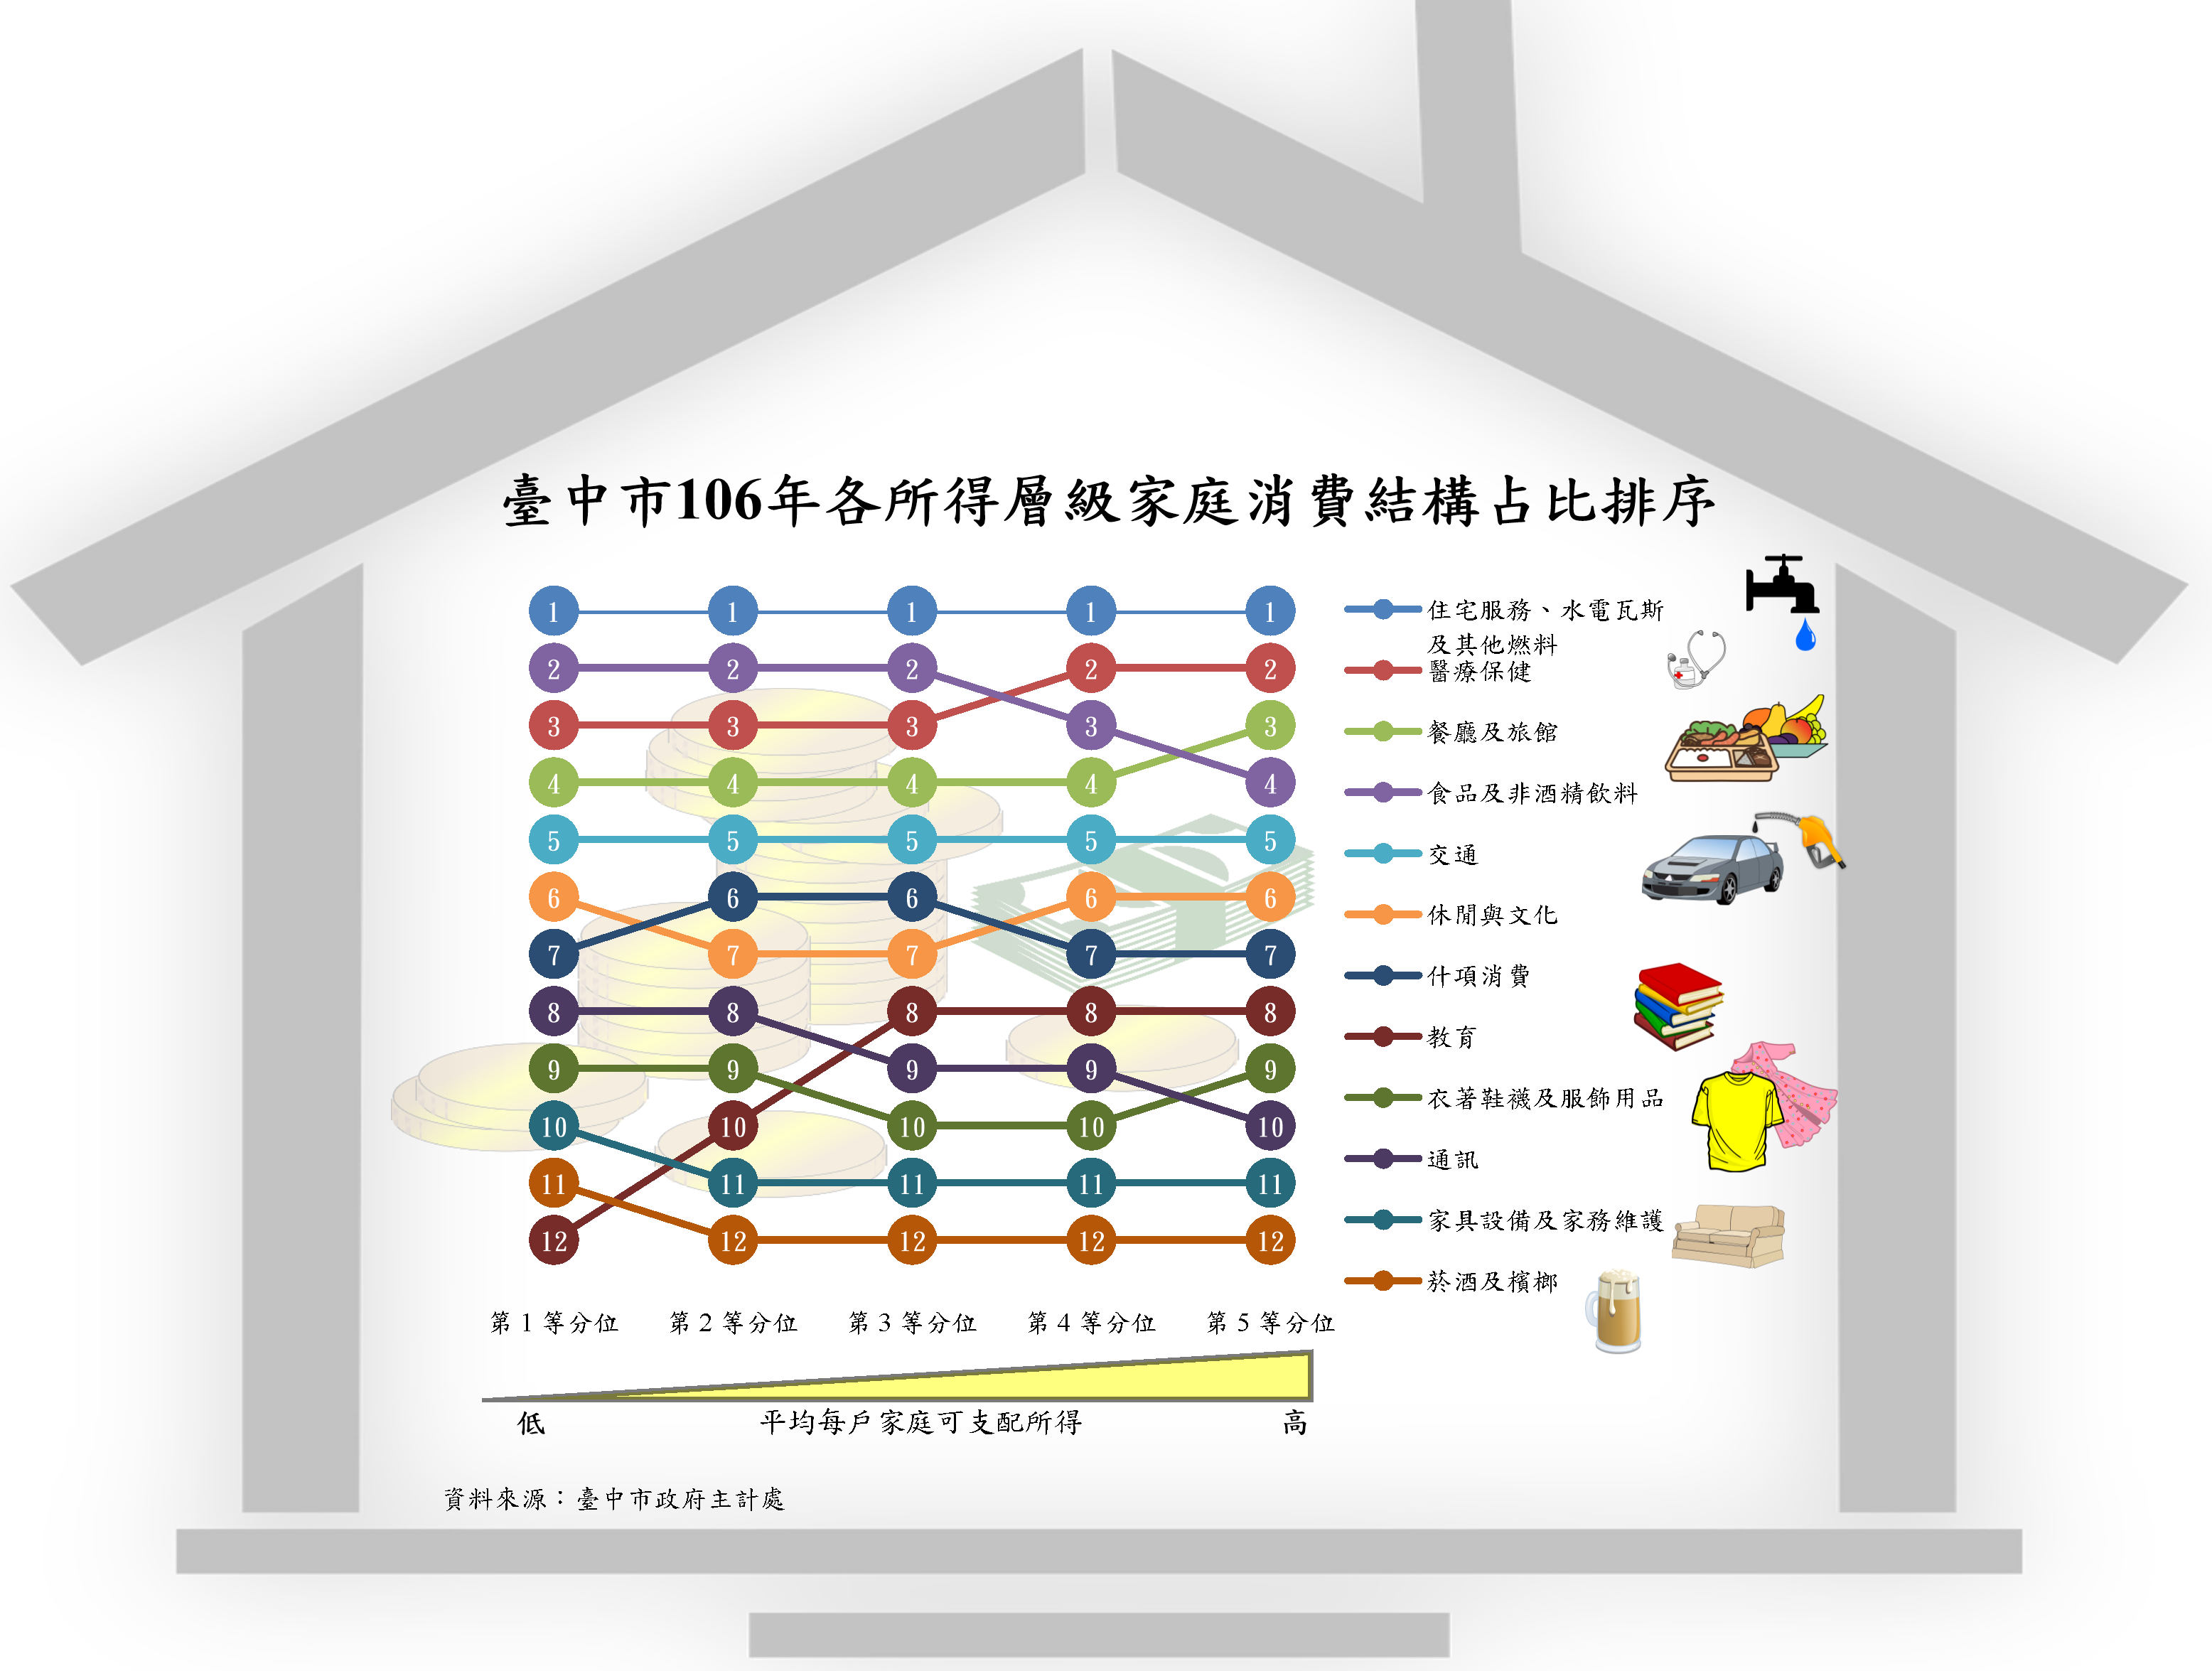 臺中市106年各所得層級家庭消費結構占比排序